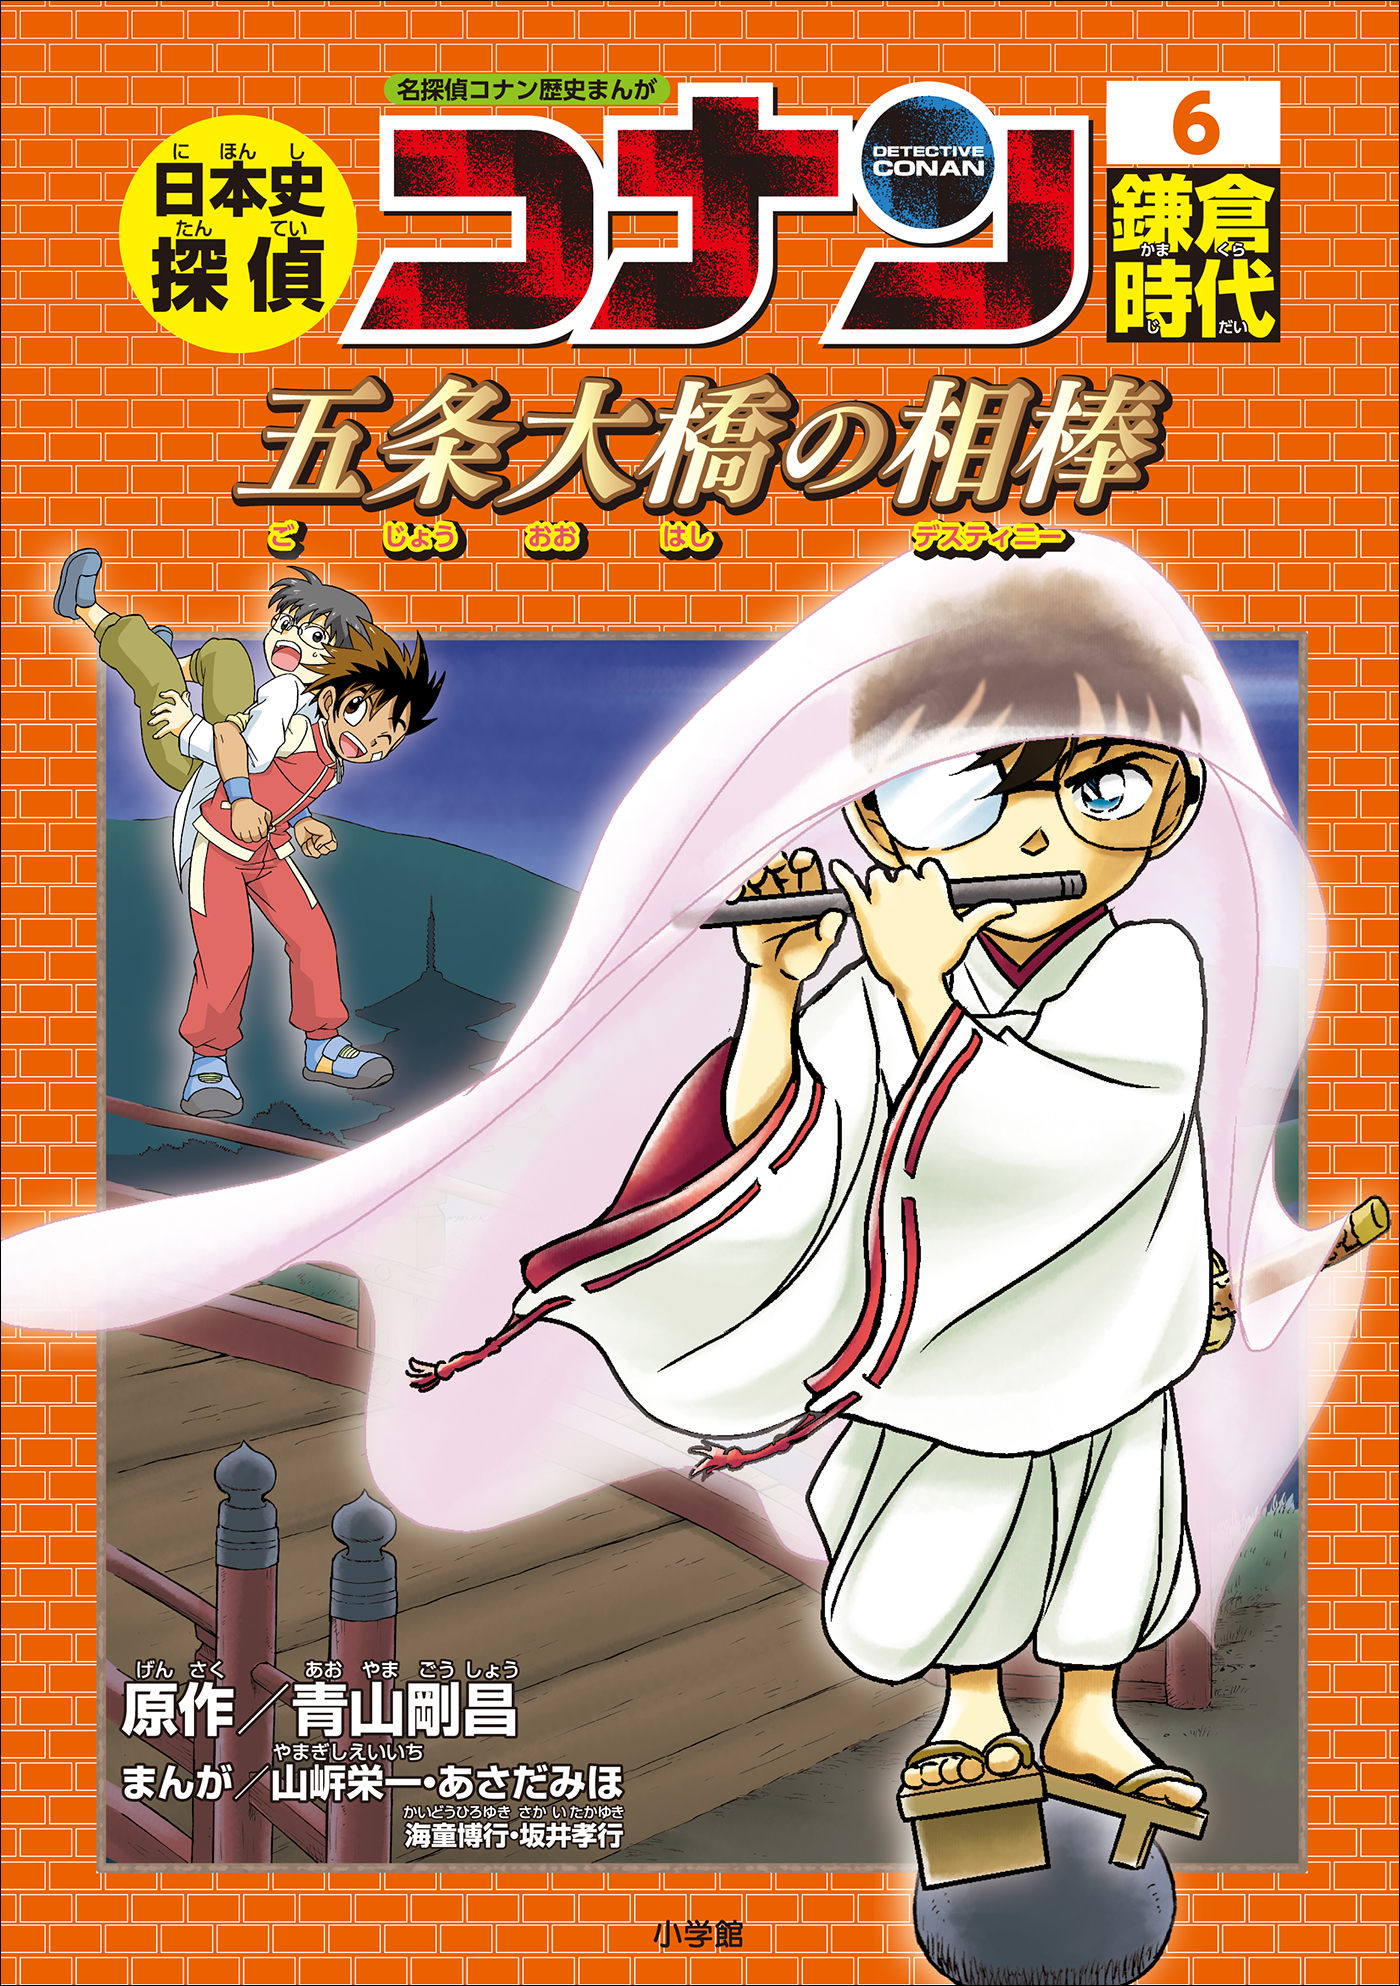 日本史探偵コナン全12巻セット 名探偵コナン 日本の歴史 学習漫画 全巻 - 全巻セット